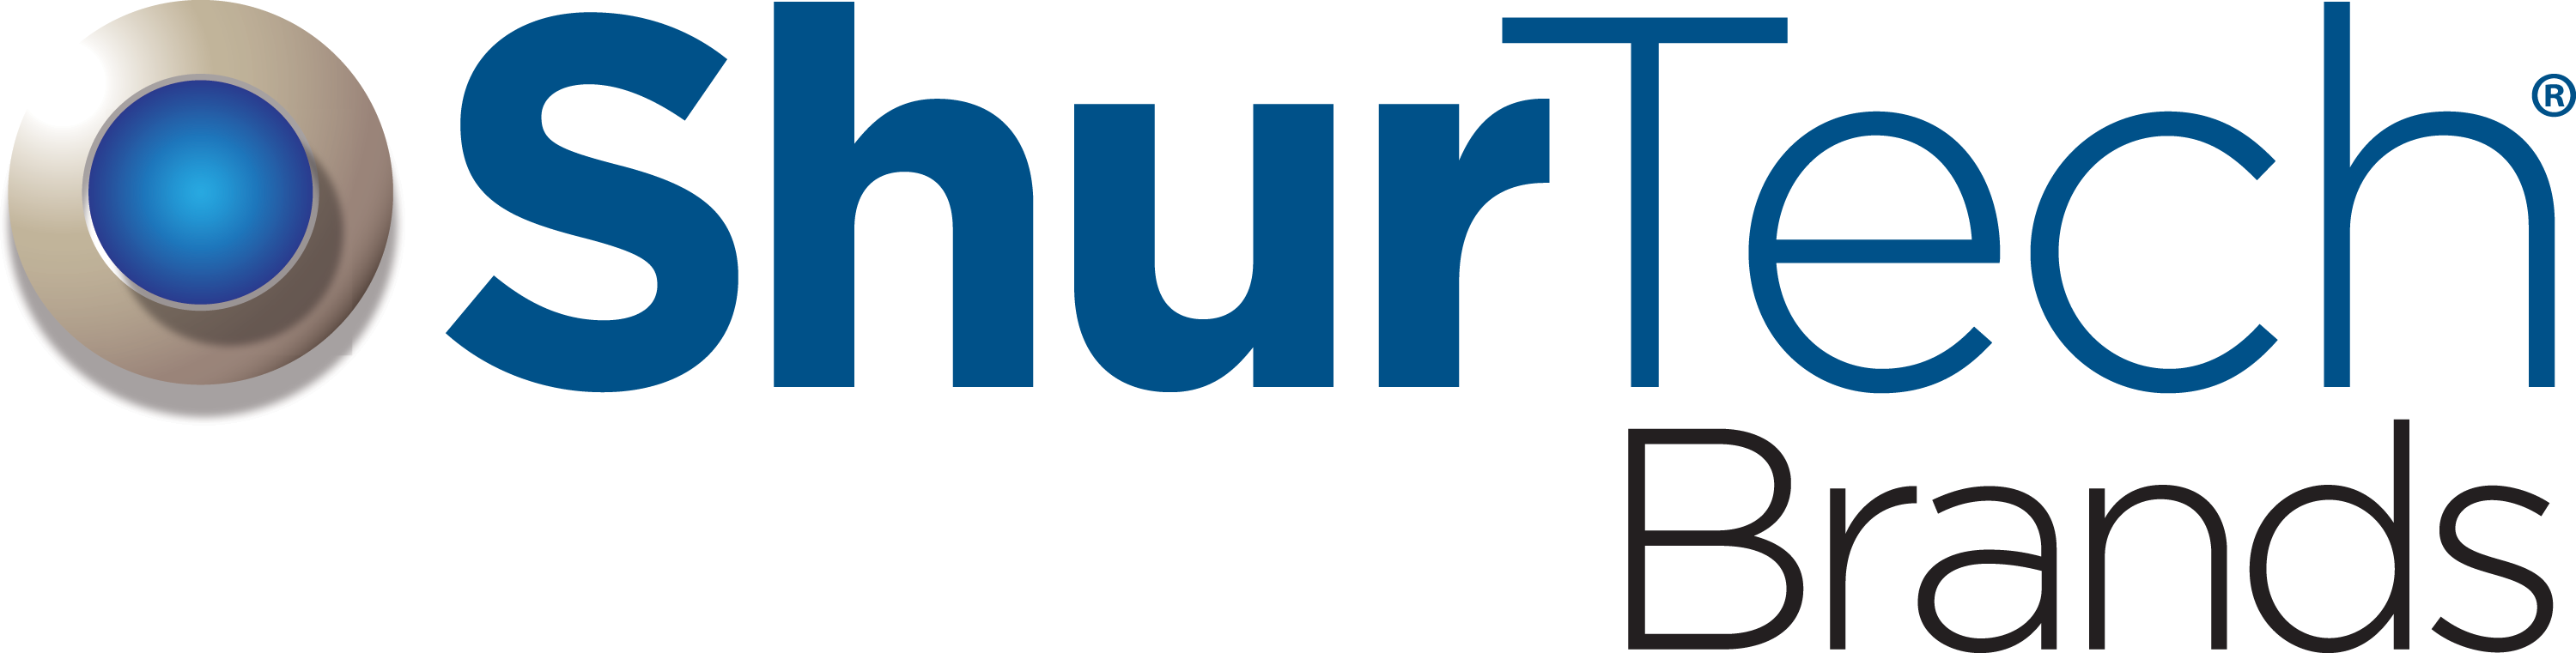 ShurTech-Brands-Logo-1